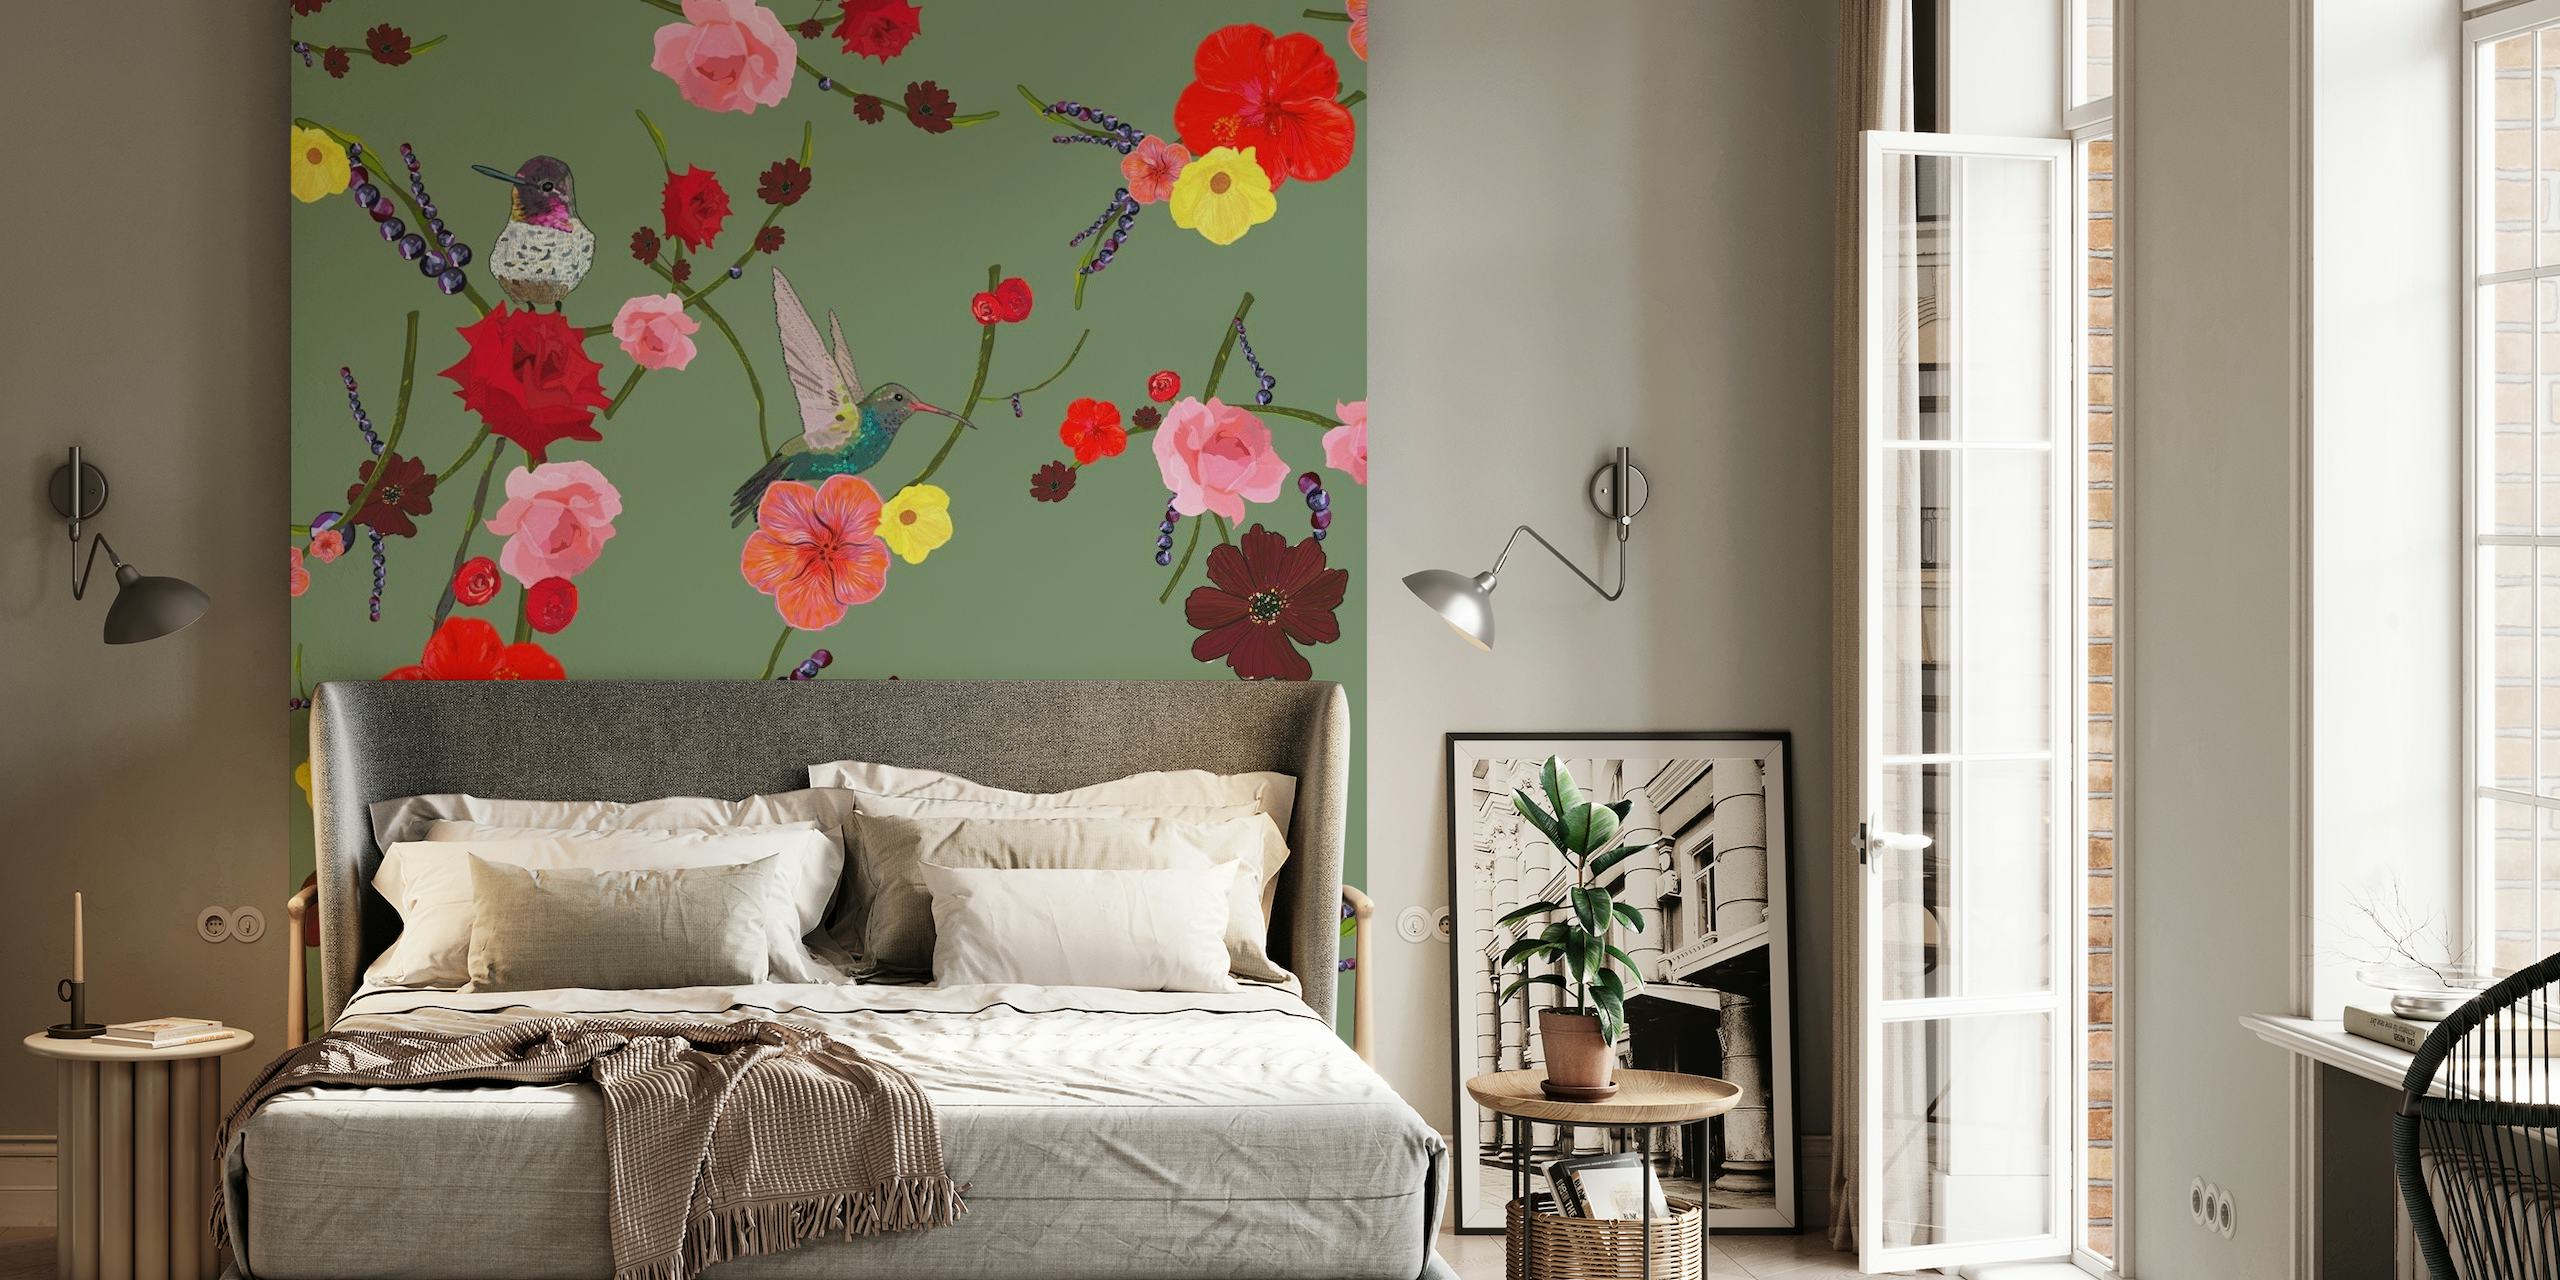 Blumenwandbild mit Vögeln und Hibiskusrosen auf grünem Hintergrund